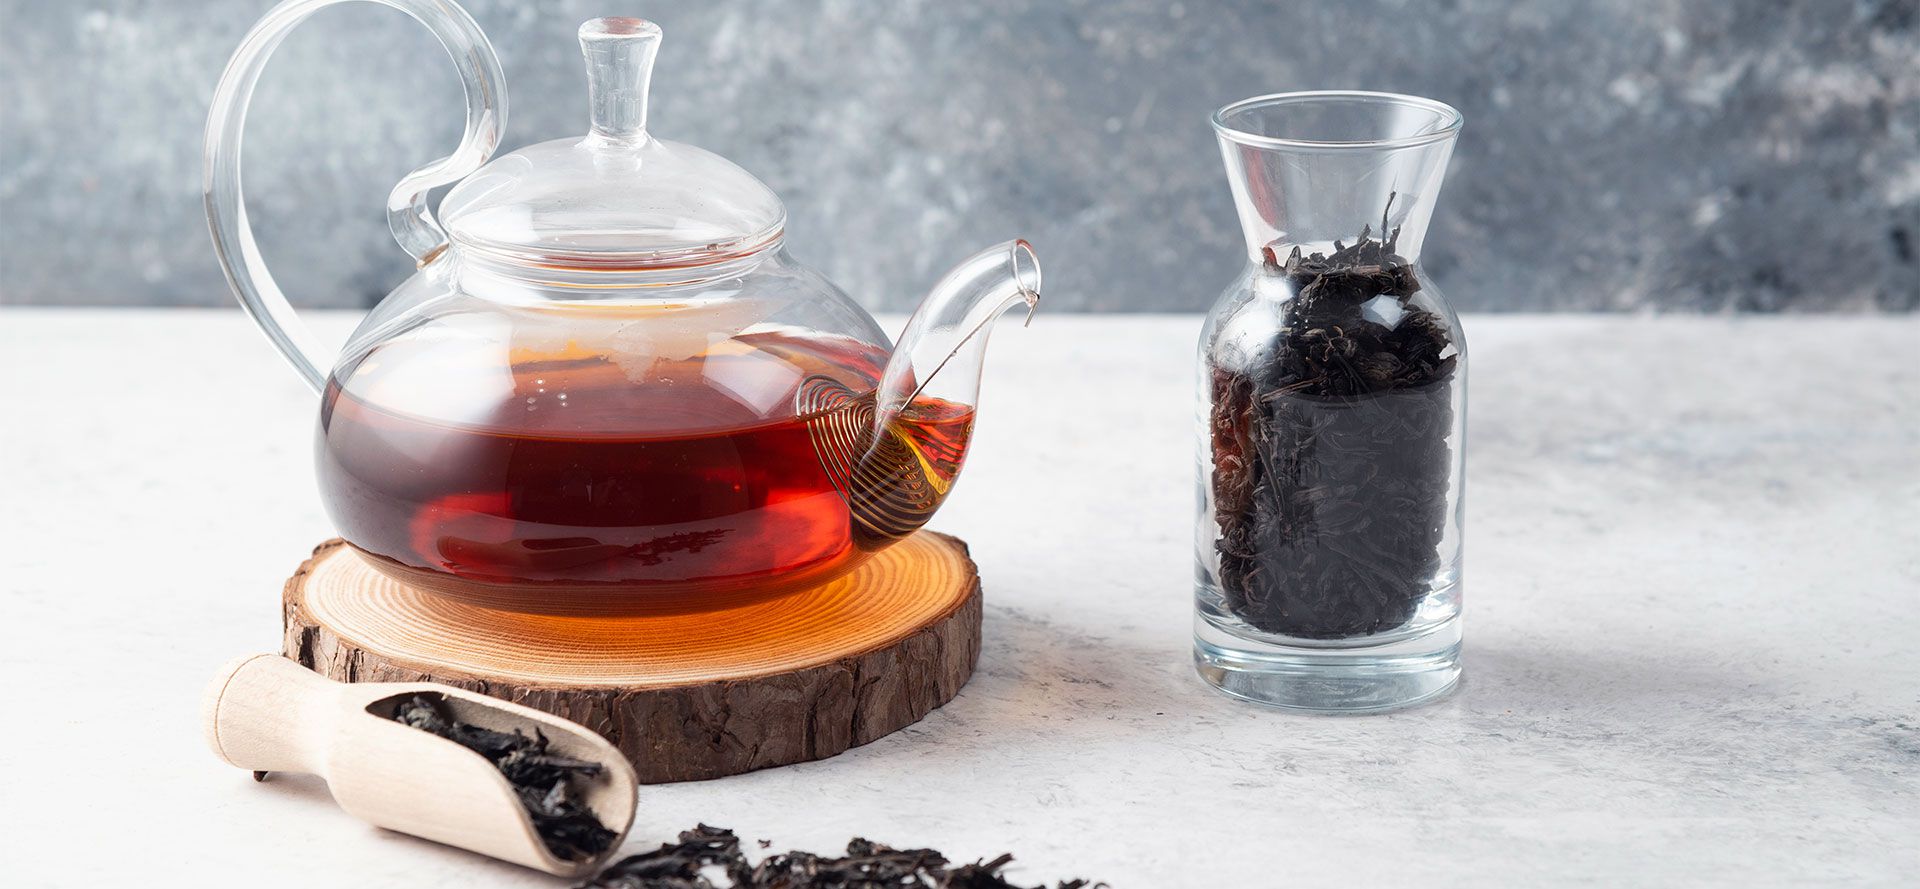 Caffeine Free Tea in a Glass Pot.